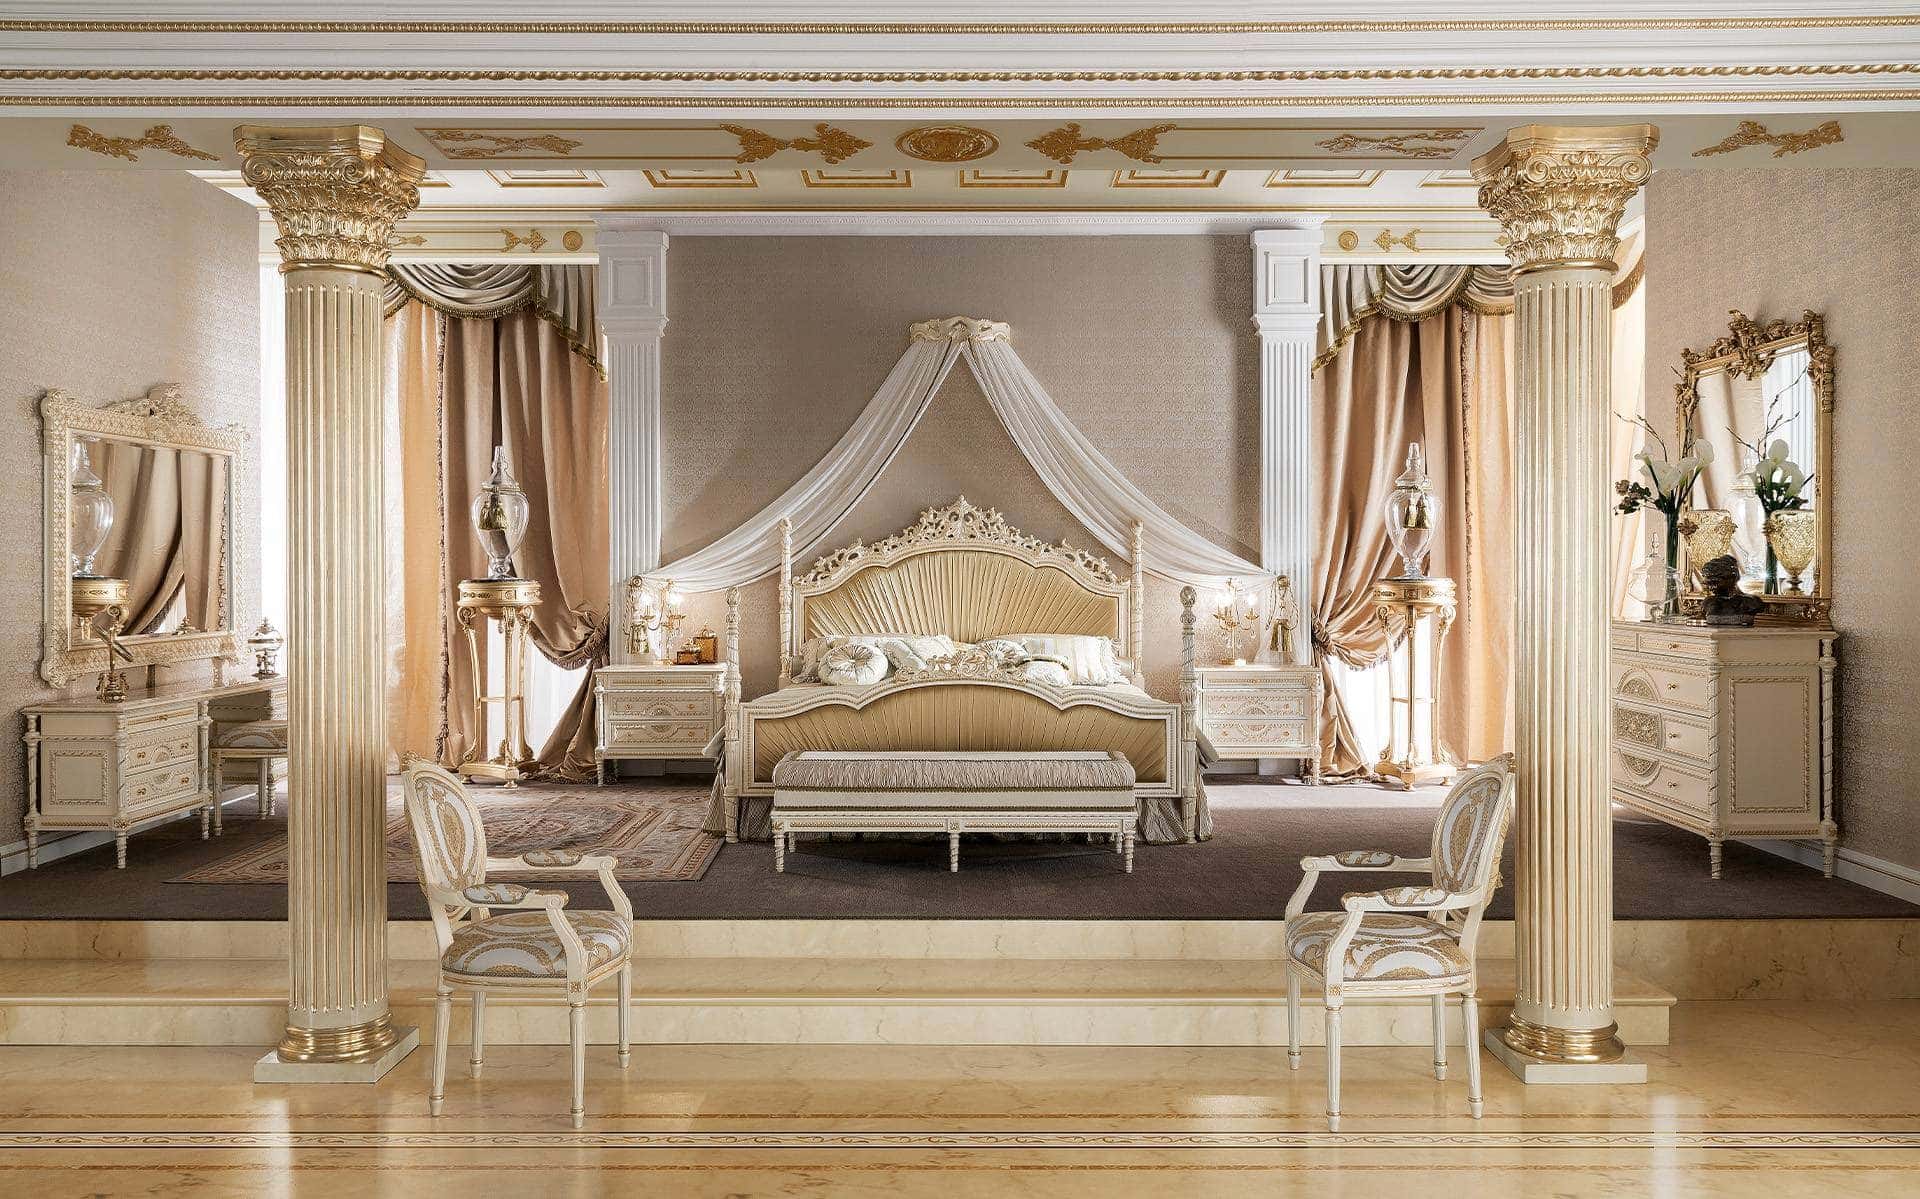 优雅帝国风格的精致主卧室，意大利最佳设计和家具制造。优雅的手工细节、珠光象牙饰面、经典定制家具，只为打造最精致的宫殿、别墅和酒店卧室。实木手工内饰，意大利制造的高端顶级品质。传统的维多利亚威尼斯洛可可经典风格：最佳经典家具创意。